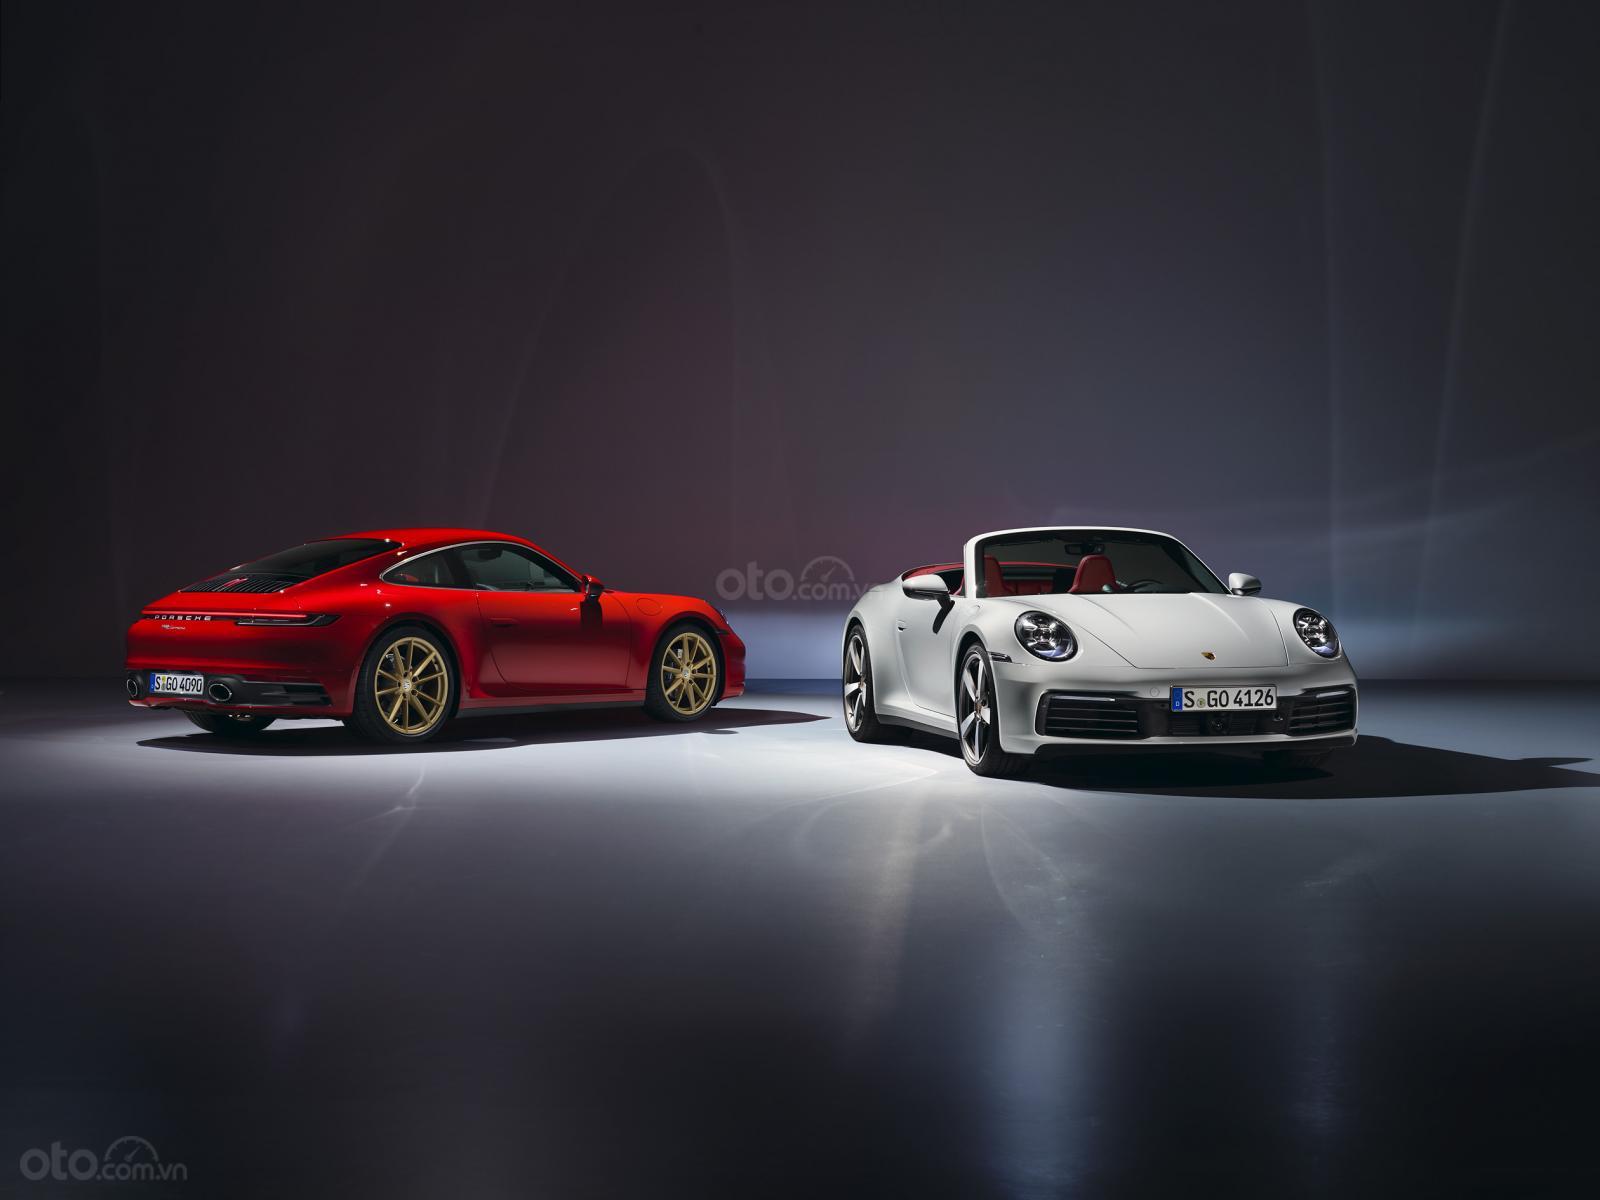 Carrera là phiên bản dành cho những người yêu thích và bắt đầu tiếp cận dòng xe huyền thoại Porsche 911.